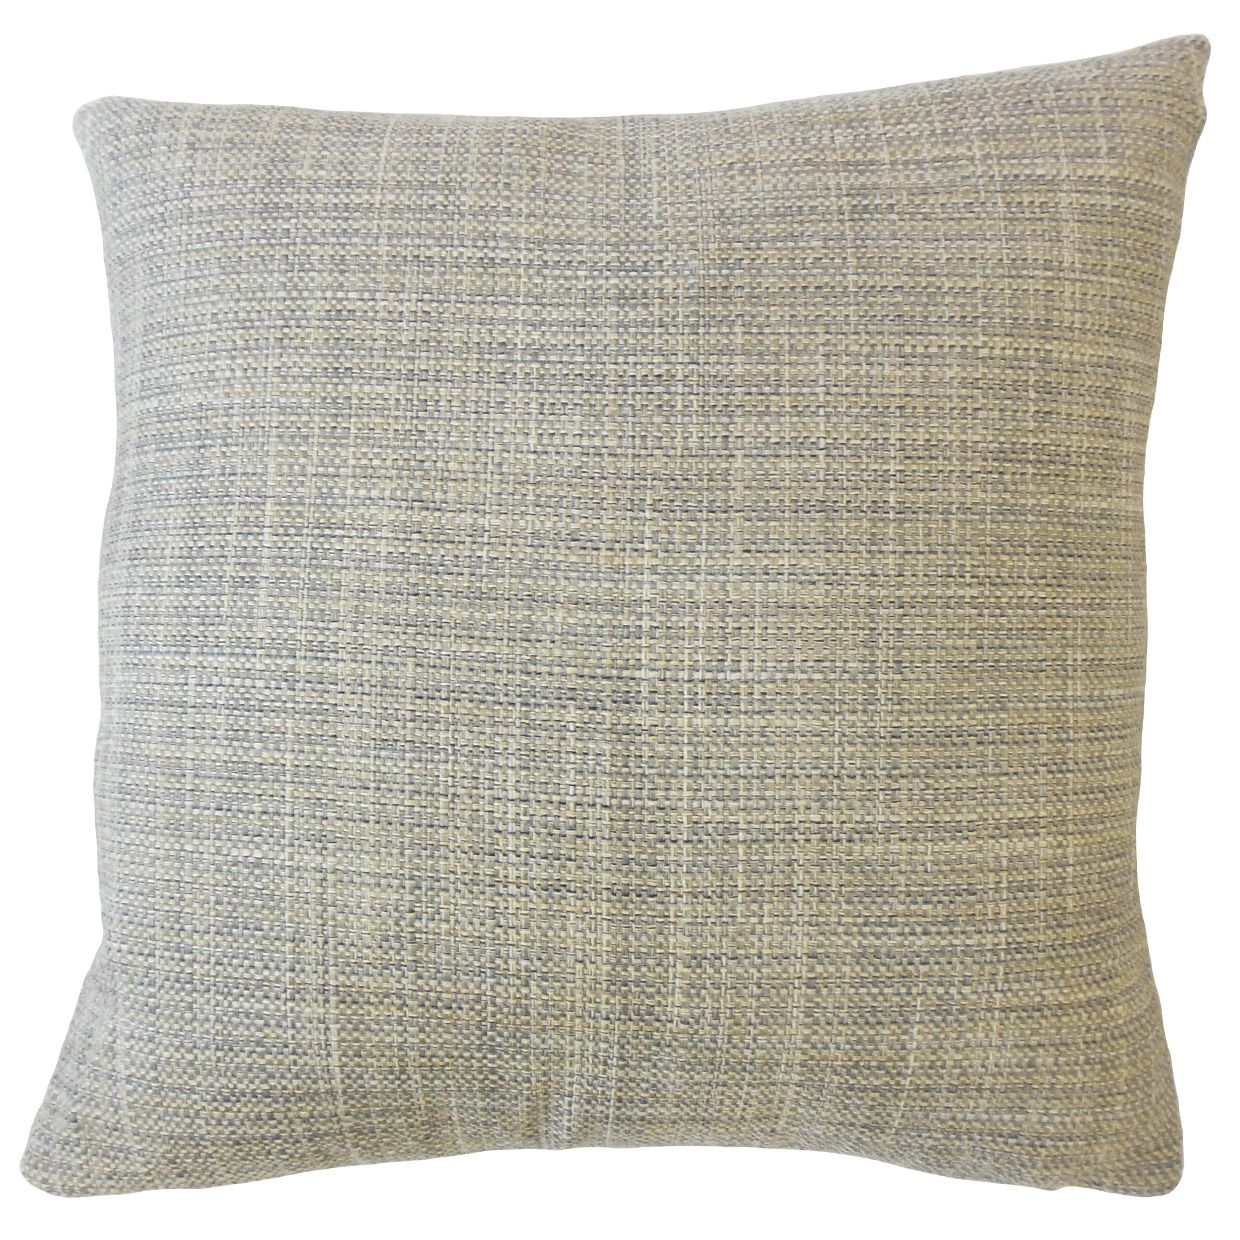 Textured Linen Lumbar Pillow, Granite, 18" x 12" - Image 0